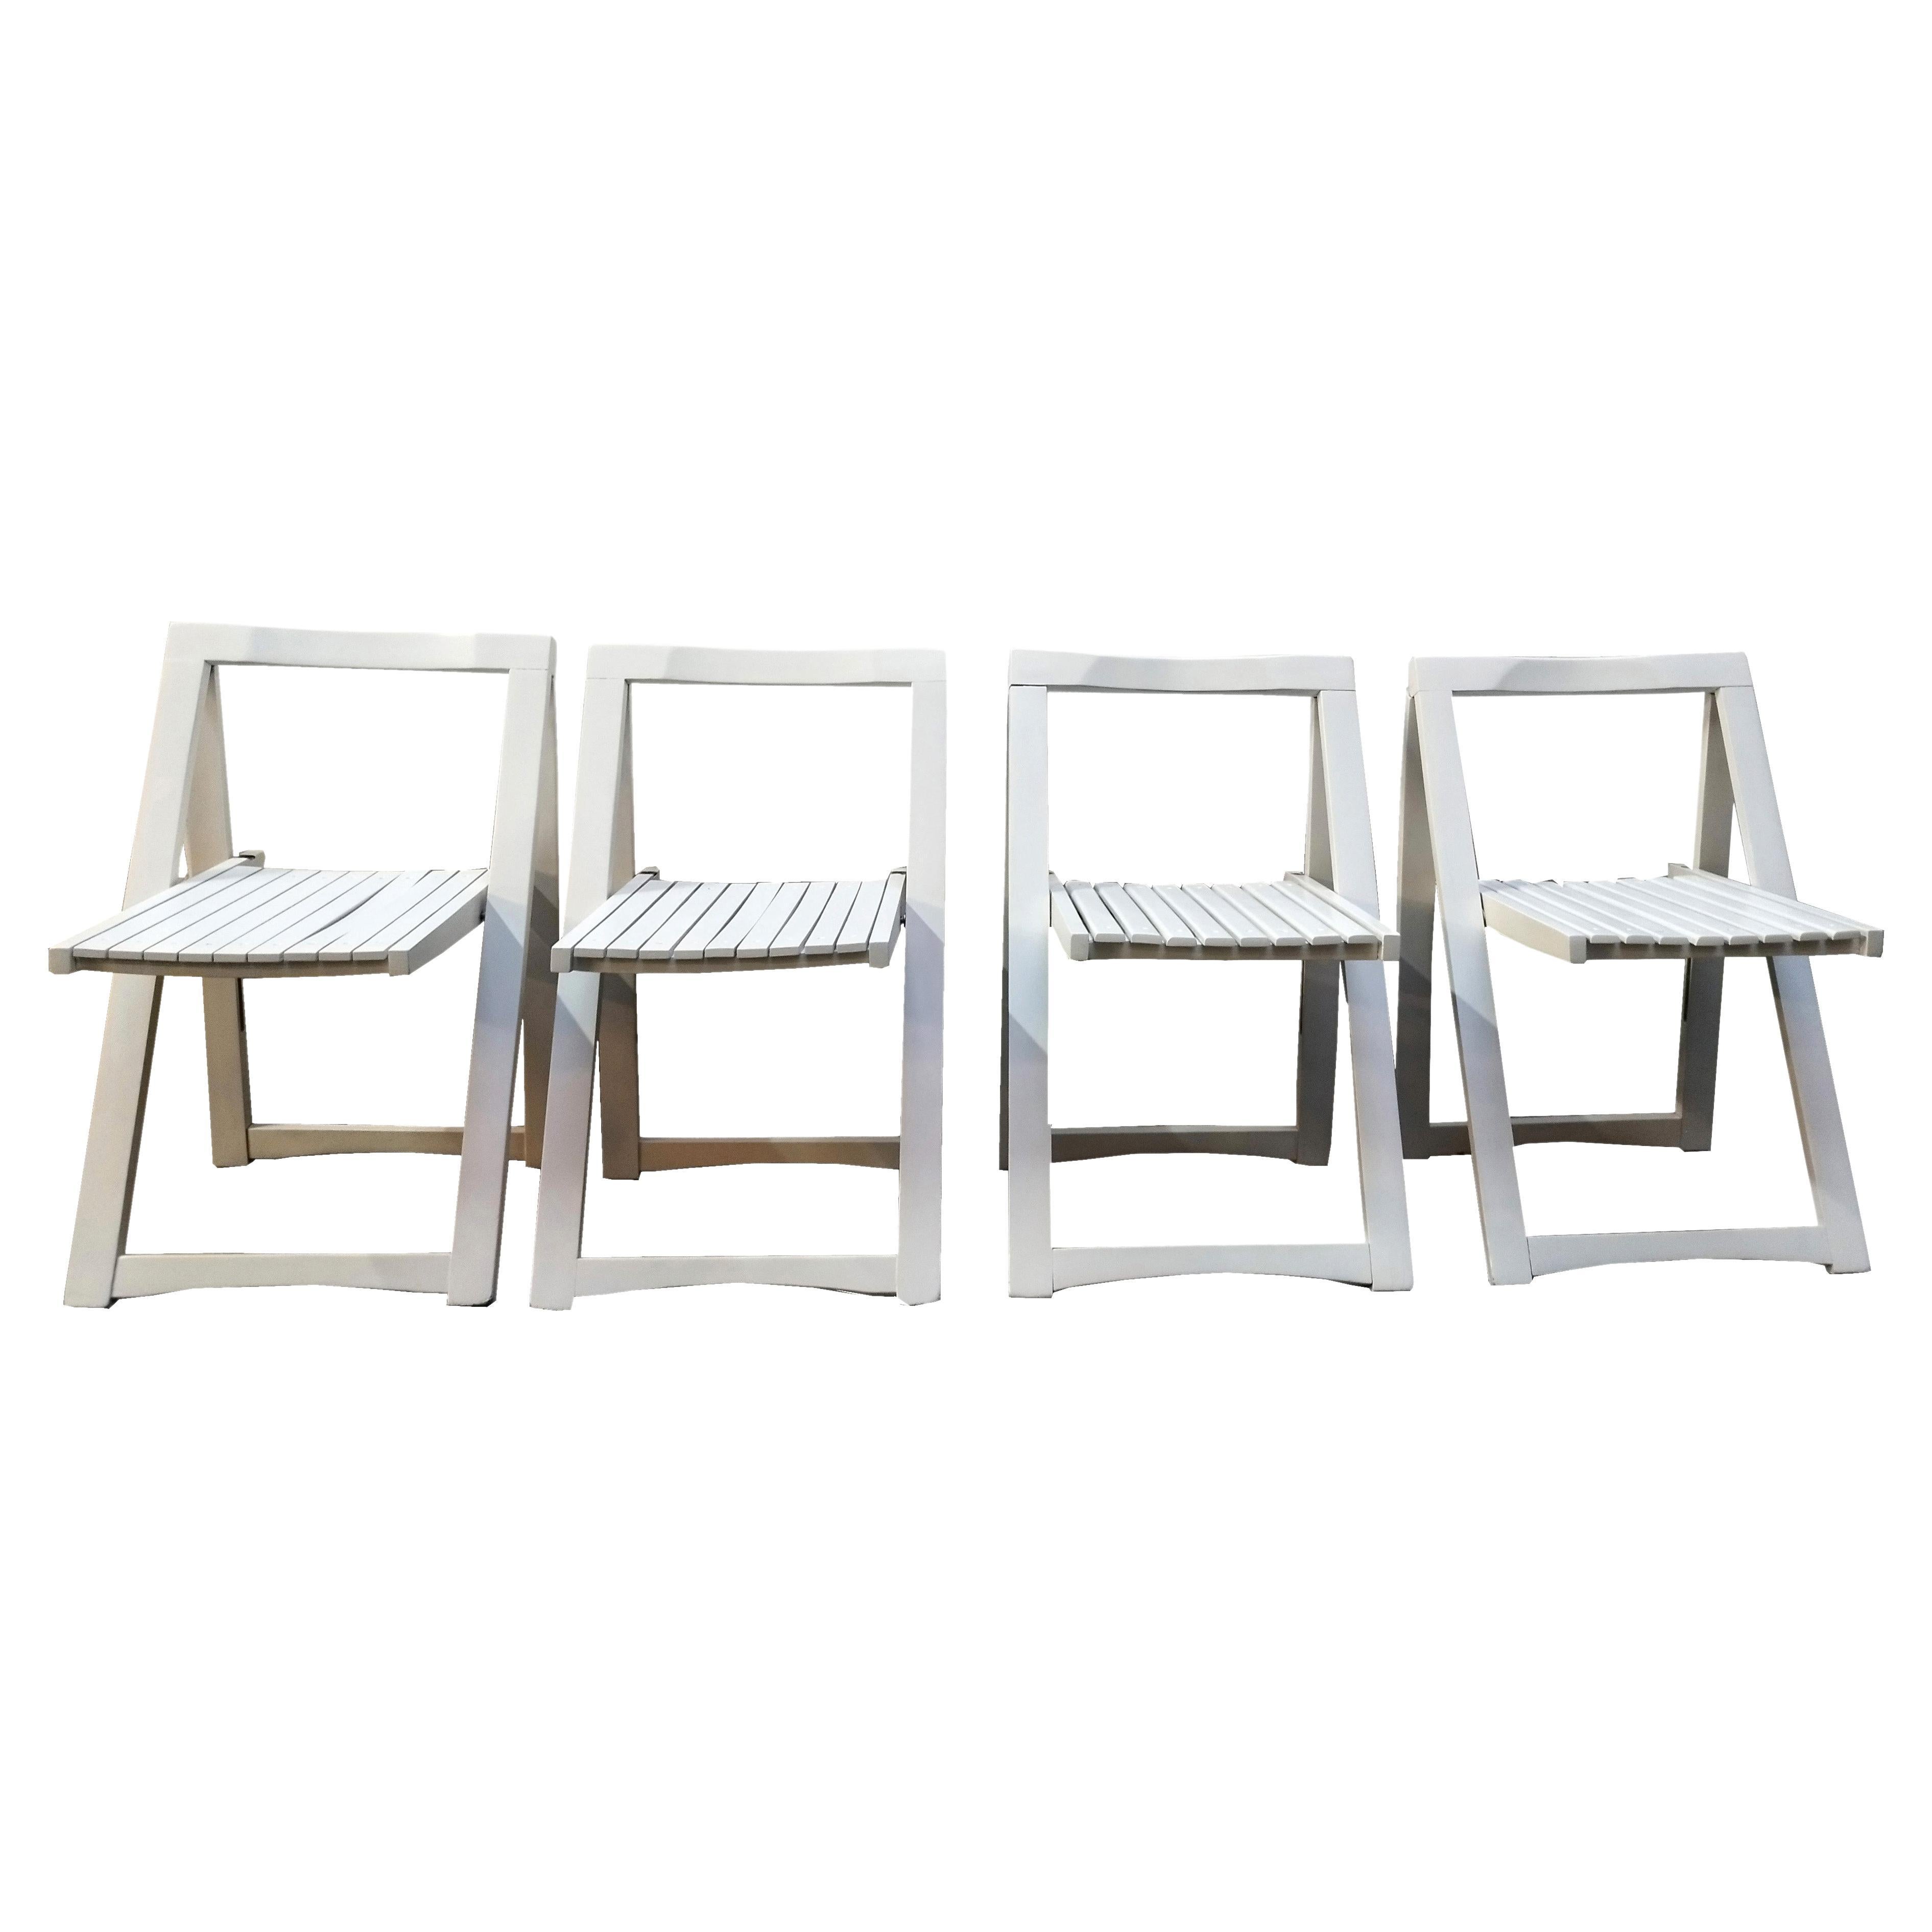 Groupe de 4 chaises pliantes blanches « Trieste » d'Aldo Jacober pour Bazzani, Italie, années 1970